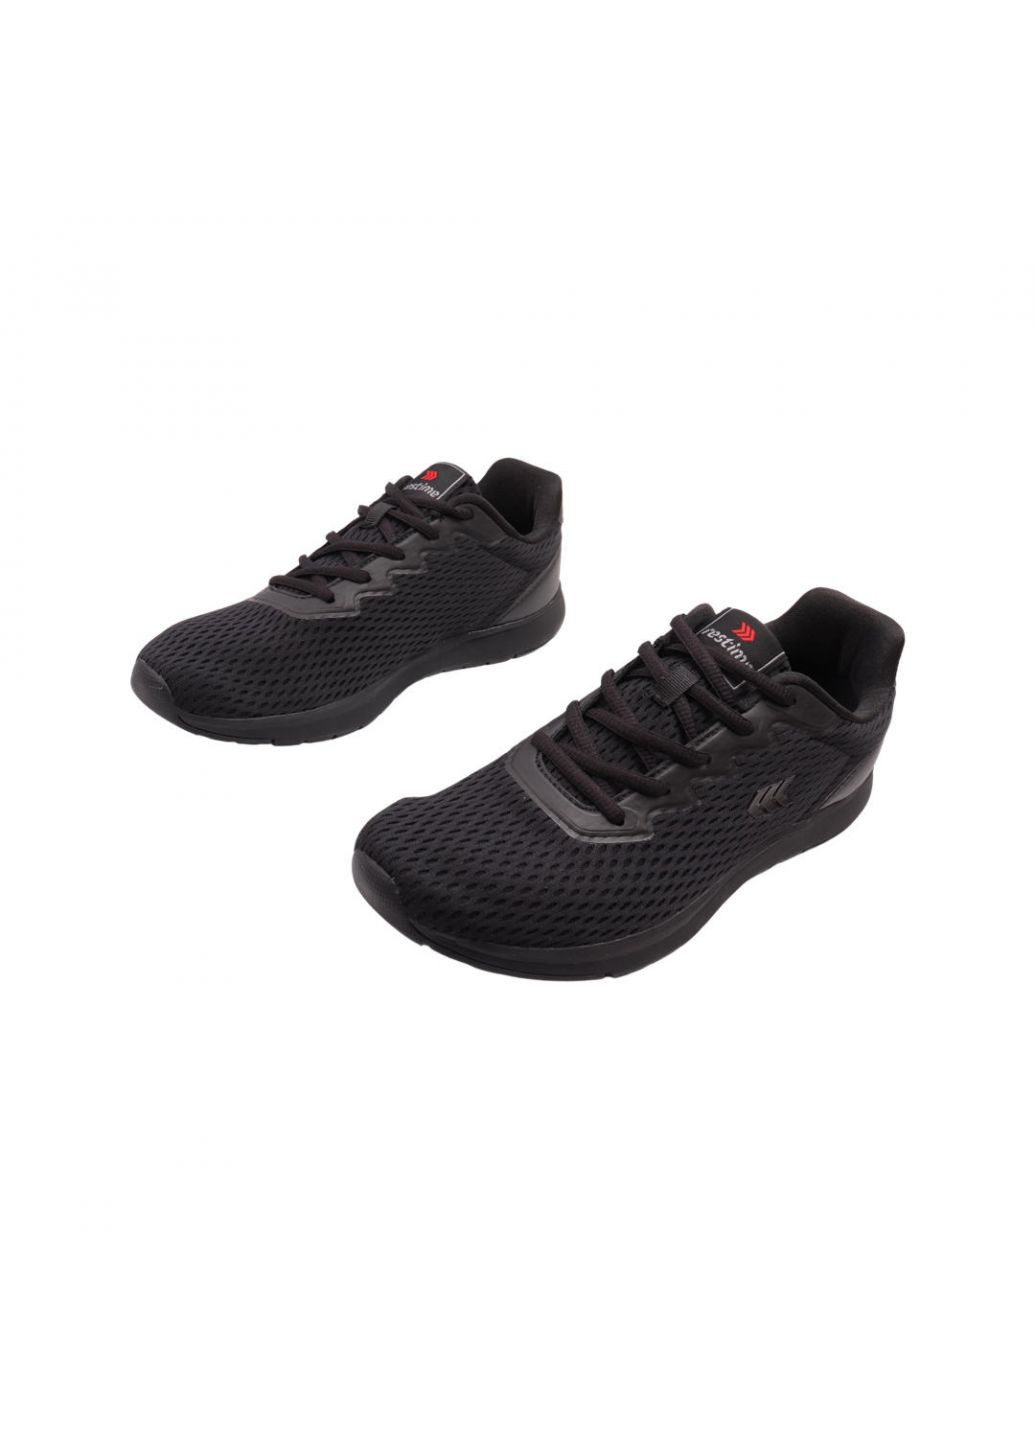 Черные кроссовки мужские черные текстиль Restime 200-22LK